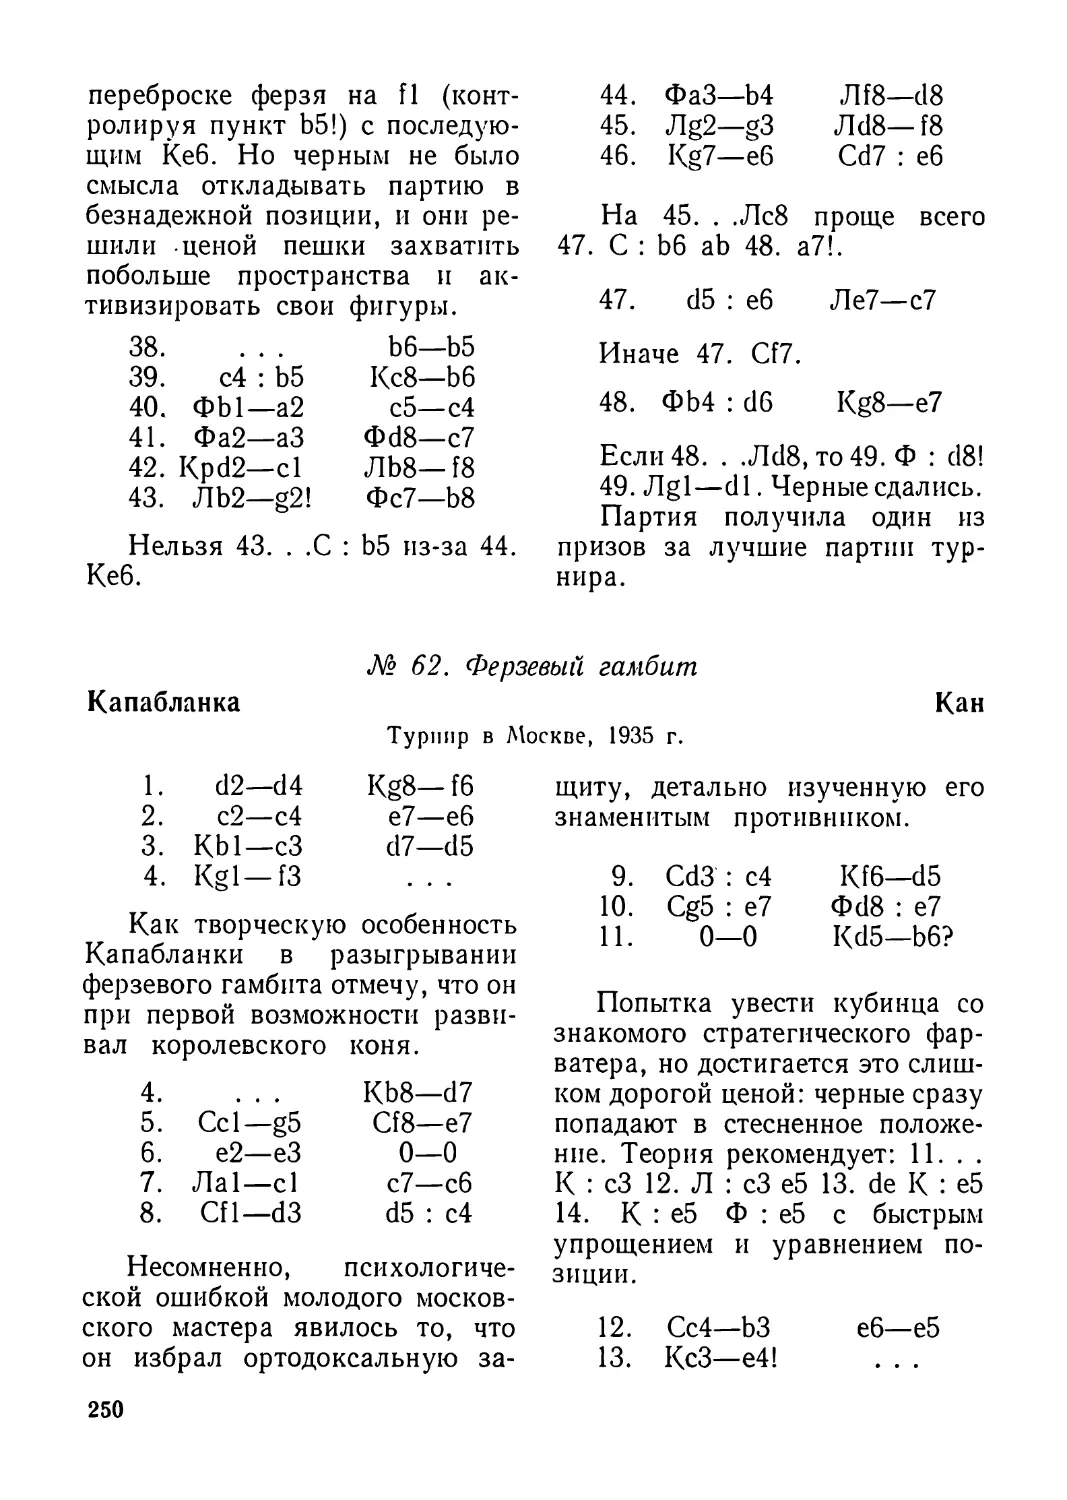 62.Капабланка—Кан, турнир в Москве 1935 г.